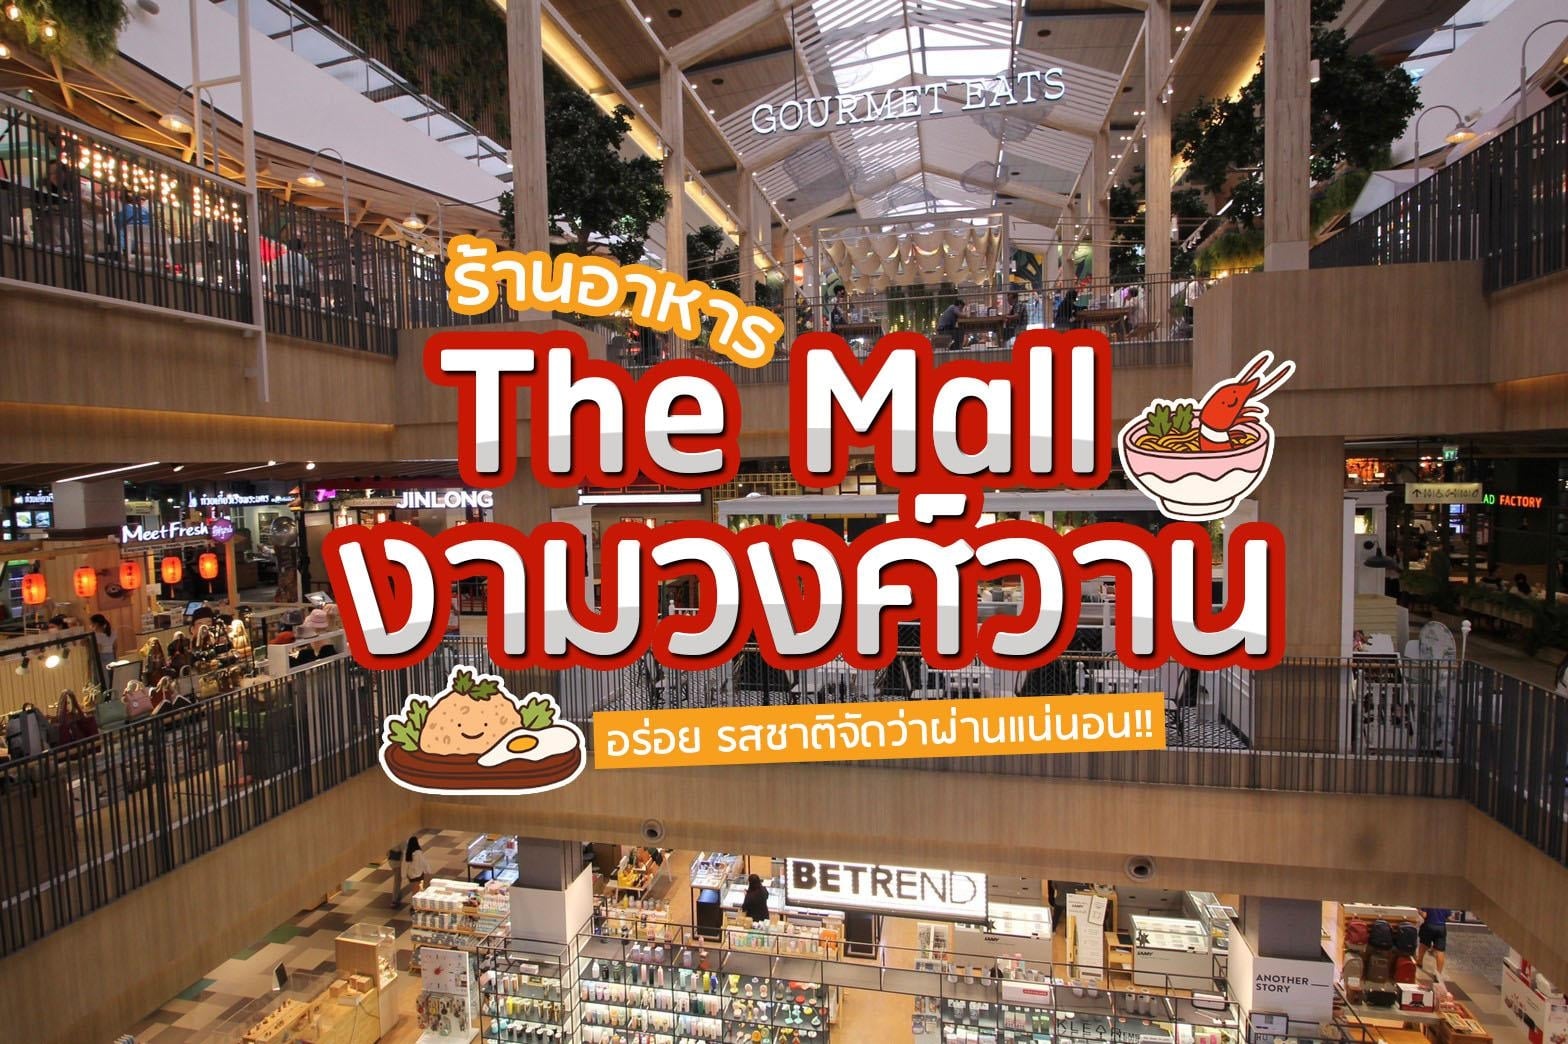 The Mall งามวงศ์วานร้านอาหาร